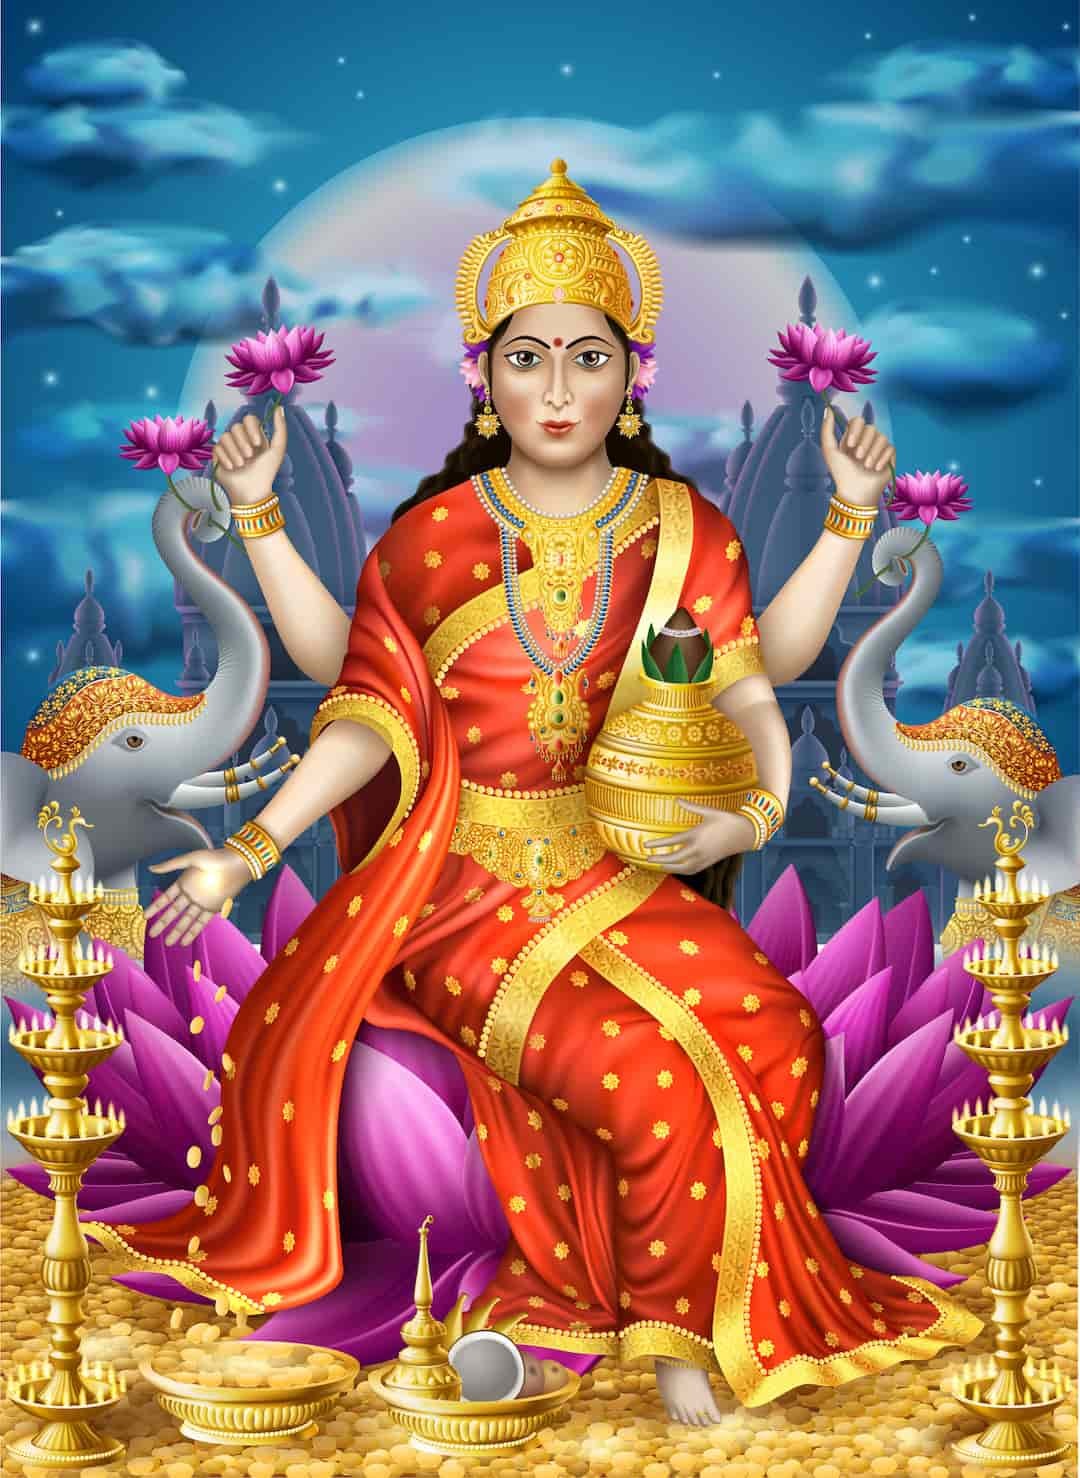  印度財富女神拉克什米身著黃金，足見黃金在印度人心中的崇高地位。